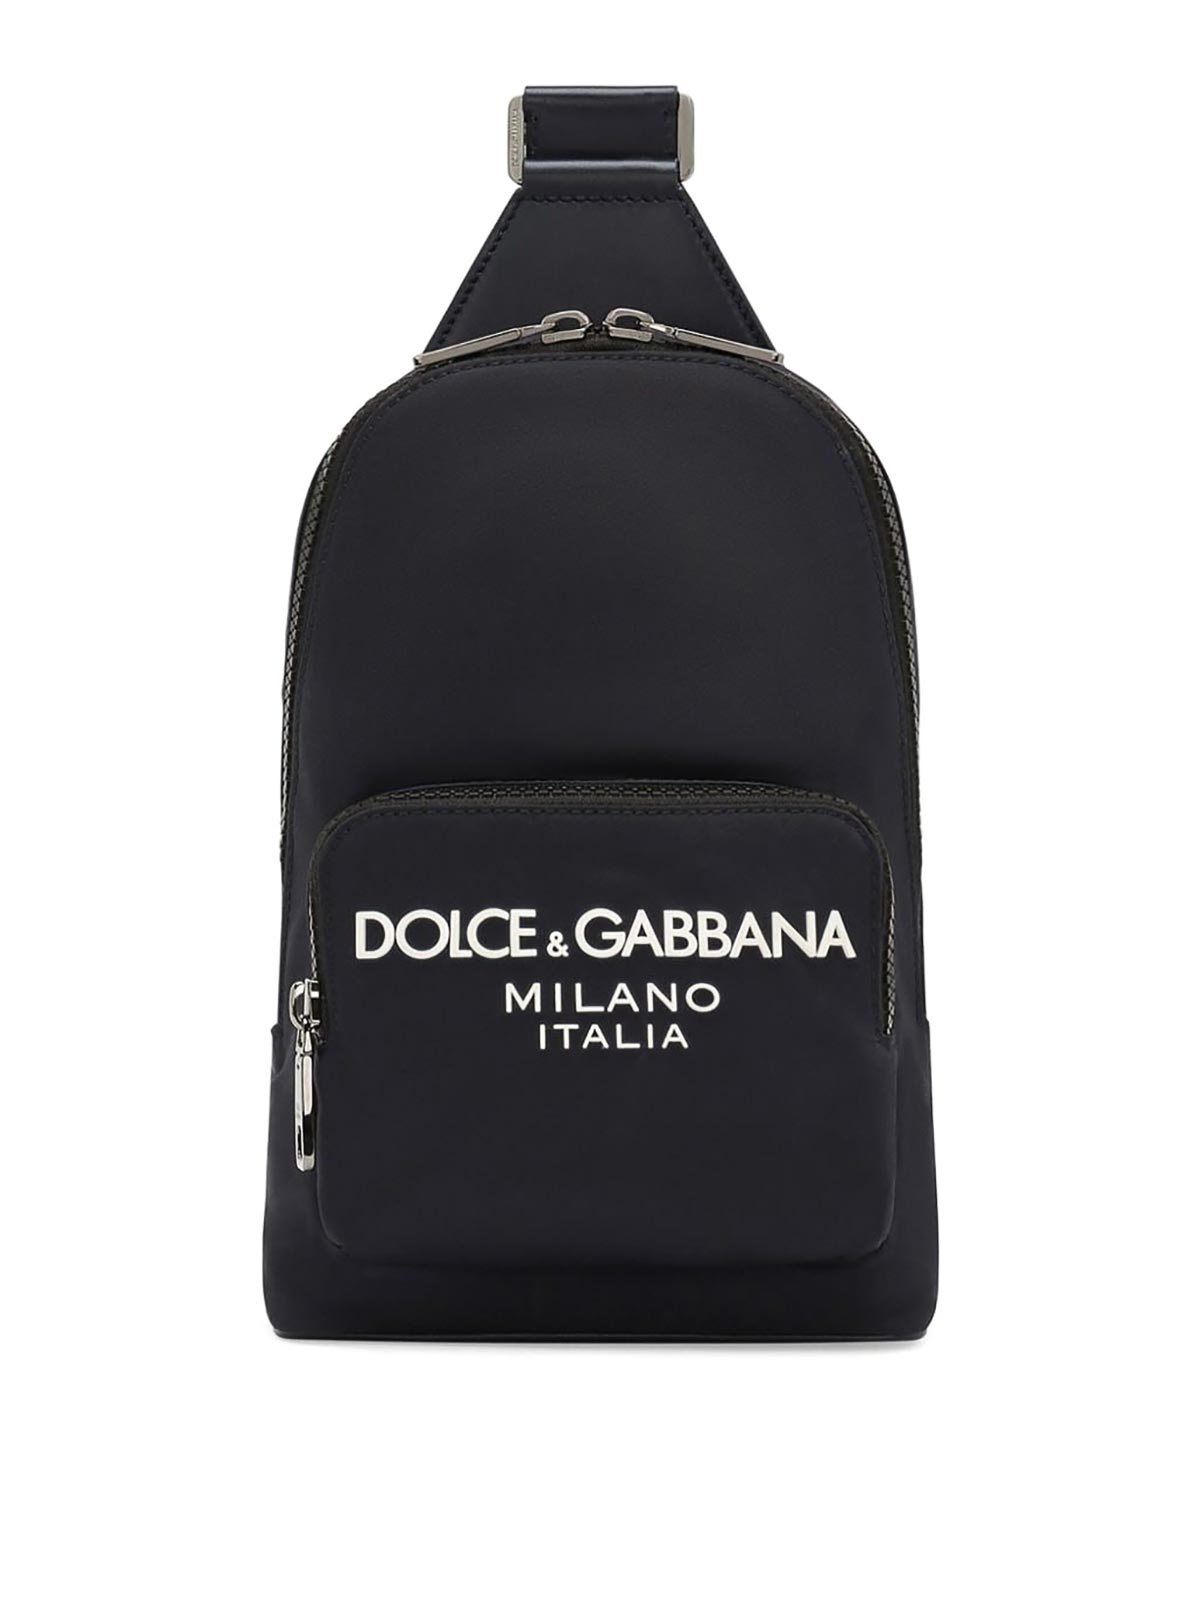 Dolce & Gabbana Bag Blue